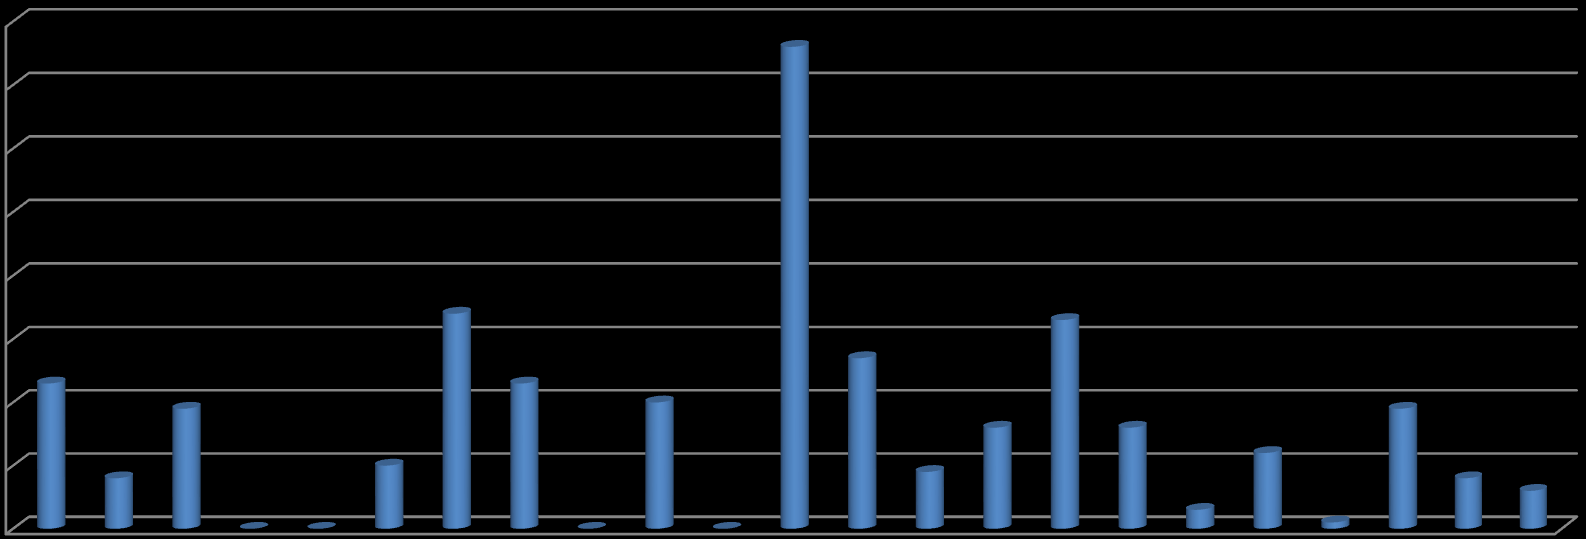 Γράφημα 2 ποσοστό πόρων του ΕΤΑ για παροπλισμό (2007- Μάιος 2014) 80 70 60 50 40